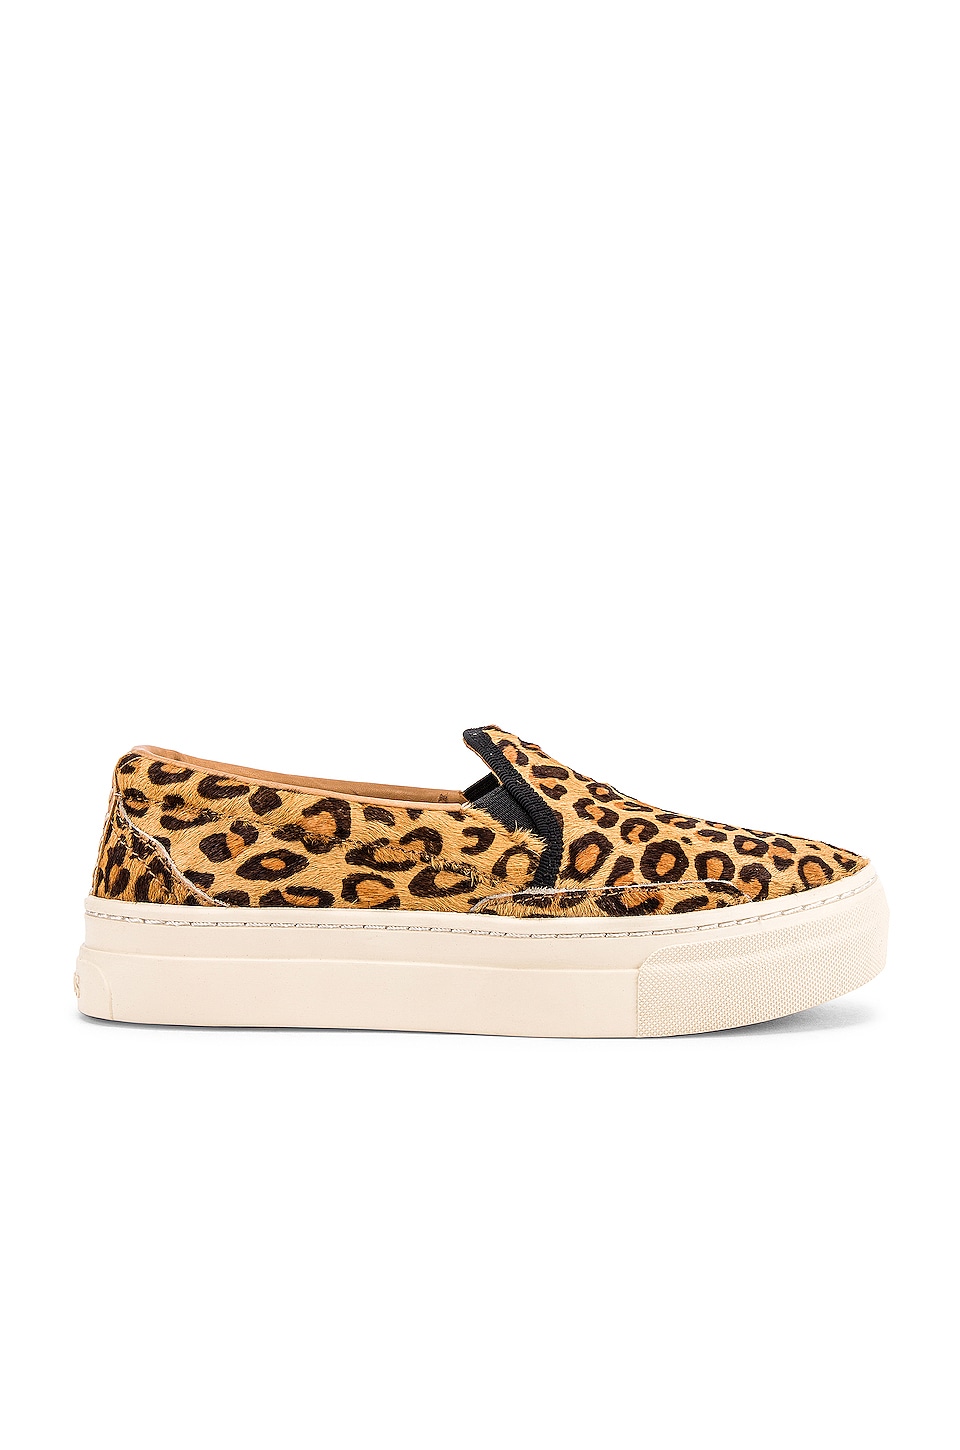 Soludos Bondi Calf Hair Sneaker in Leopard | REVOLVE